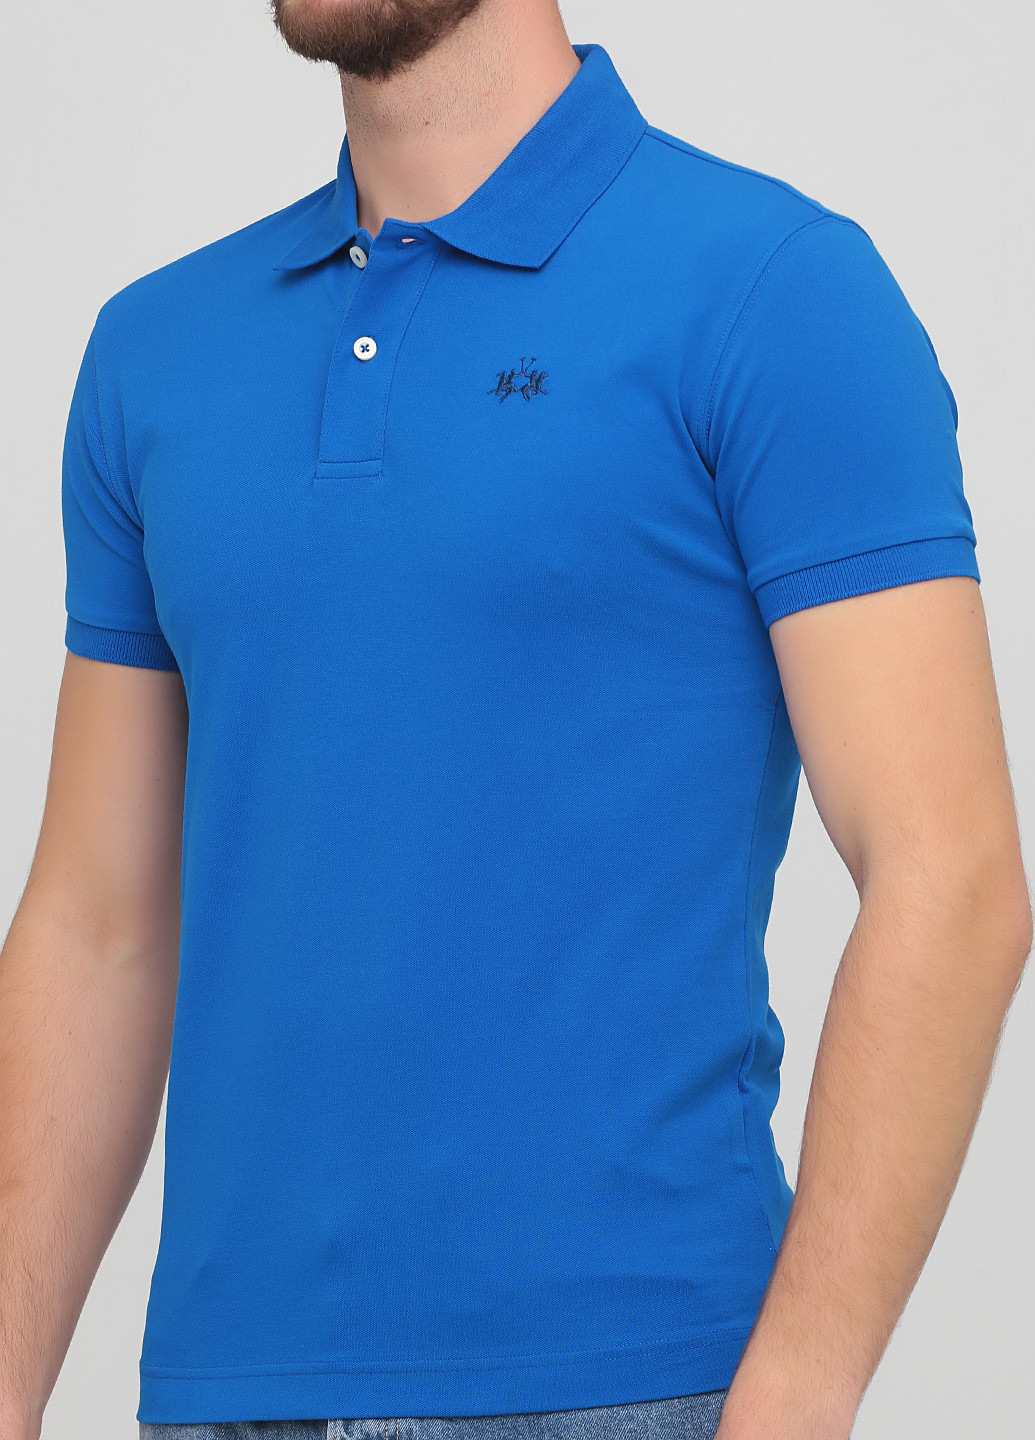 Светло-синяя футболка-поло для мужчин La Martina однотонная